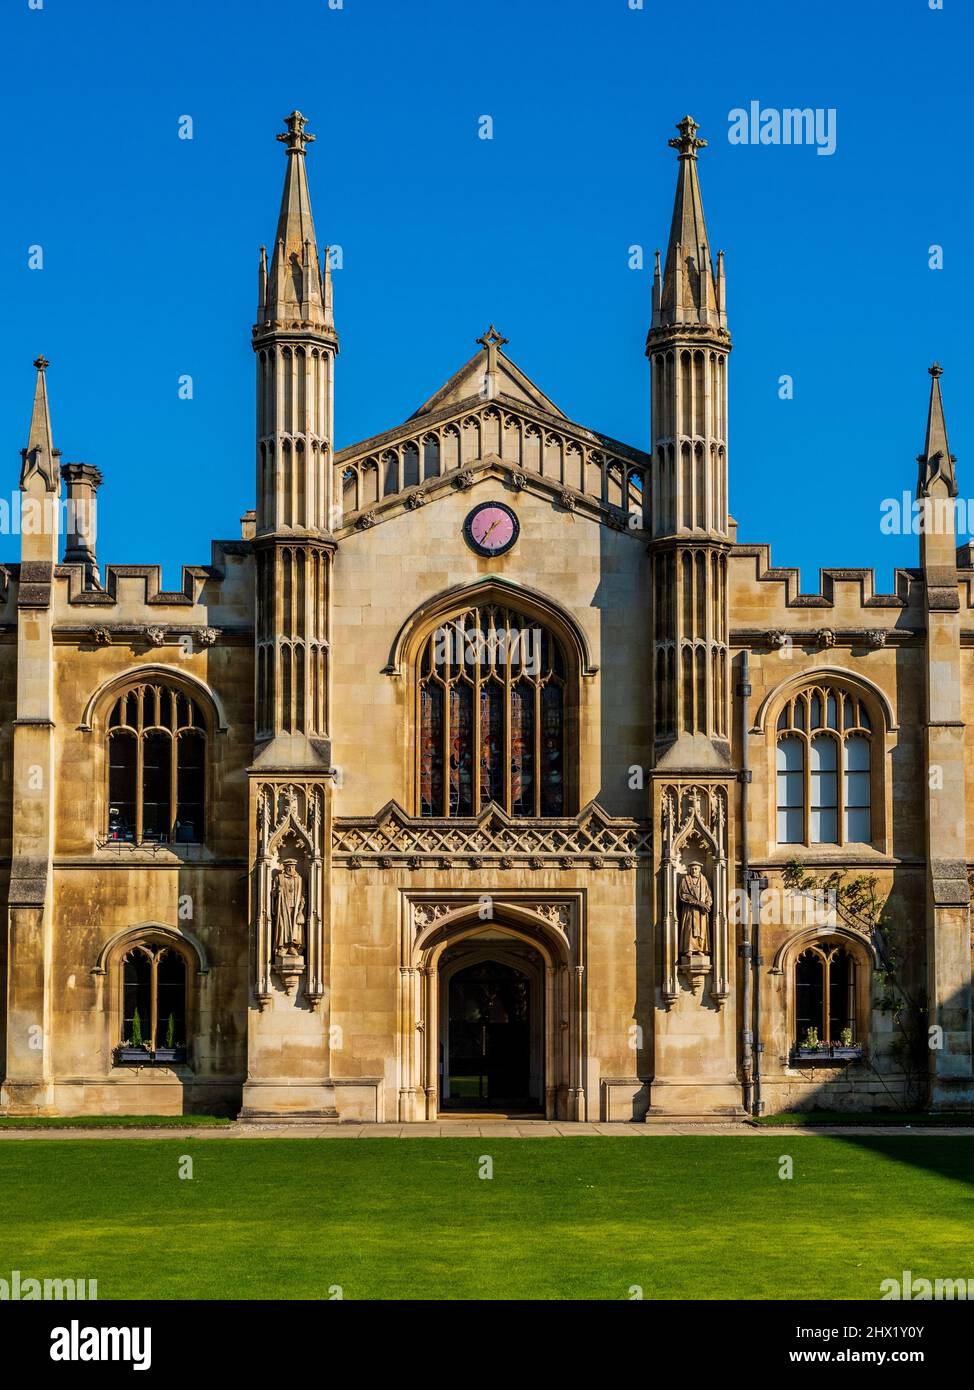 La nouvelle Cour de Corpus Christi College, qui fait partie de l'Université de Cambridge, au Royaume-Uni. Le collège a été fondé en 1352 par les habitants de Cambridge. Banque D'Images